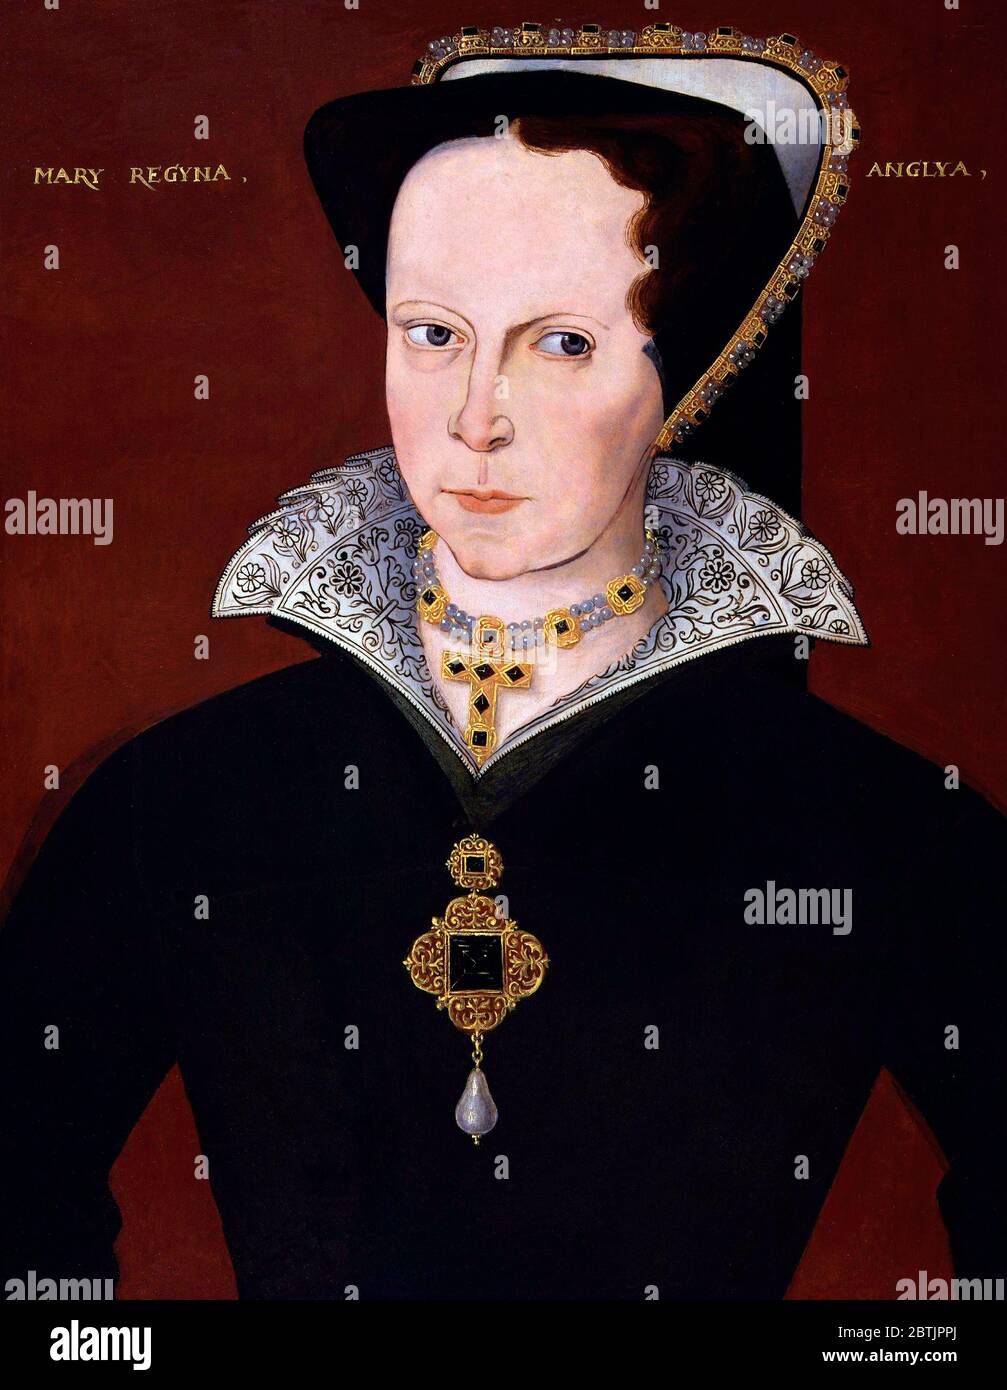 La reine Marie I d'Angleterre par artiste inconnu, huile sur panneau, c.1590-1610 Banque D'Images